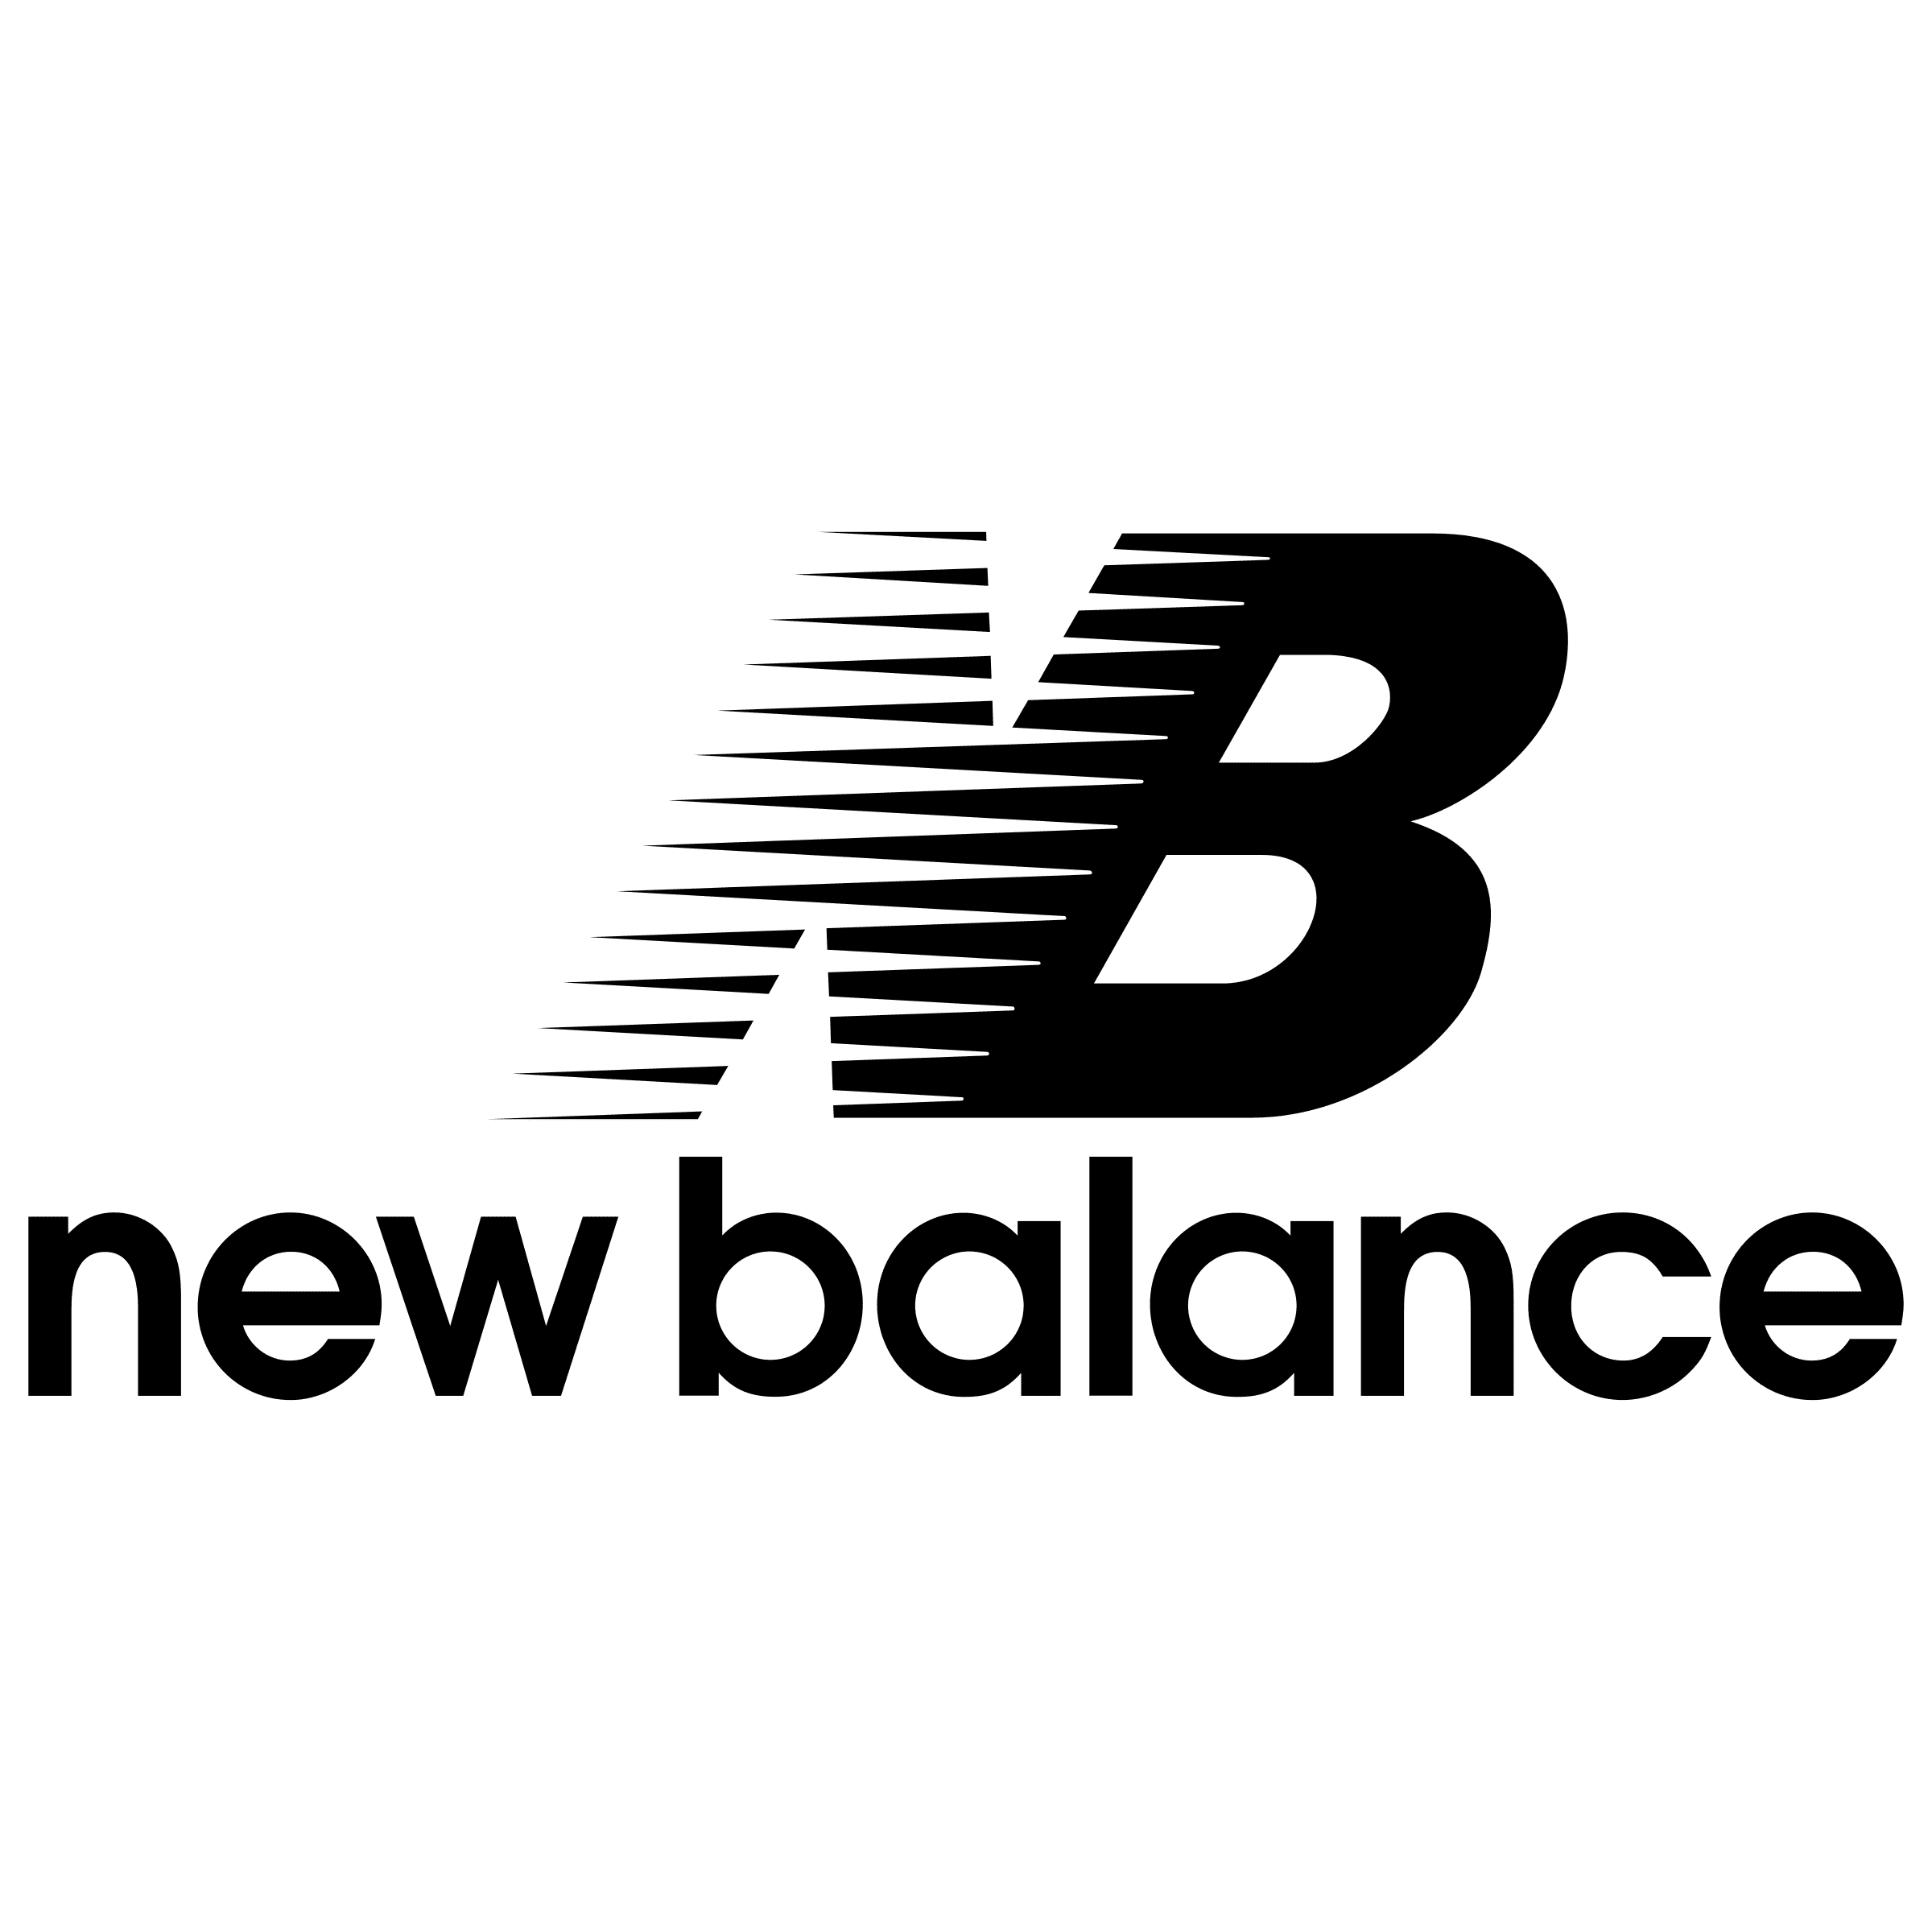 new-balance-2-logo-png-transparent